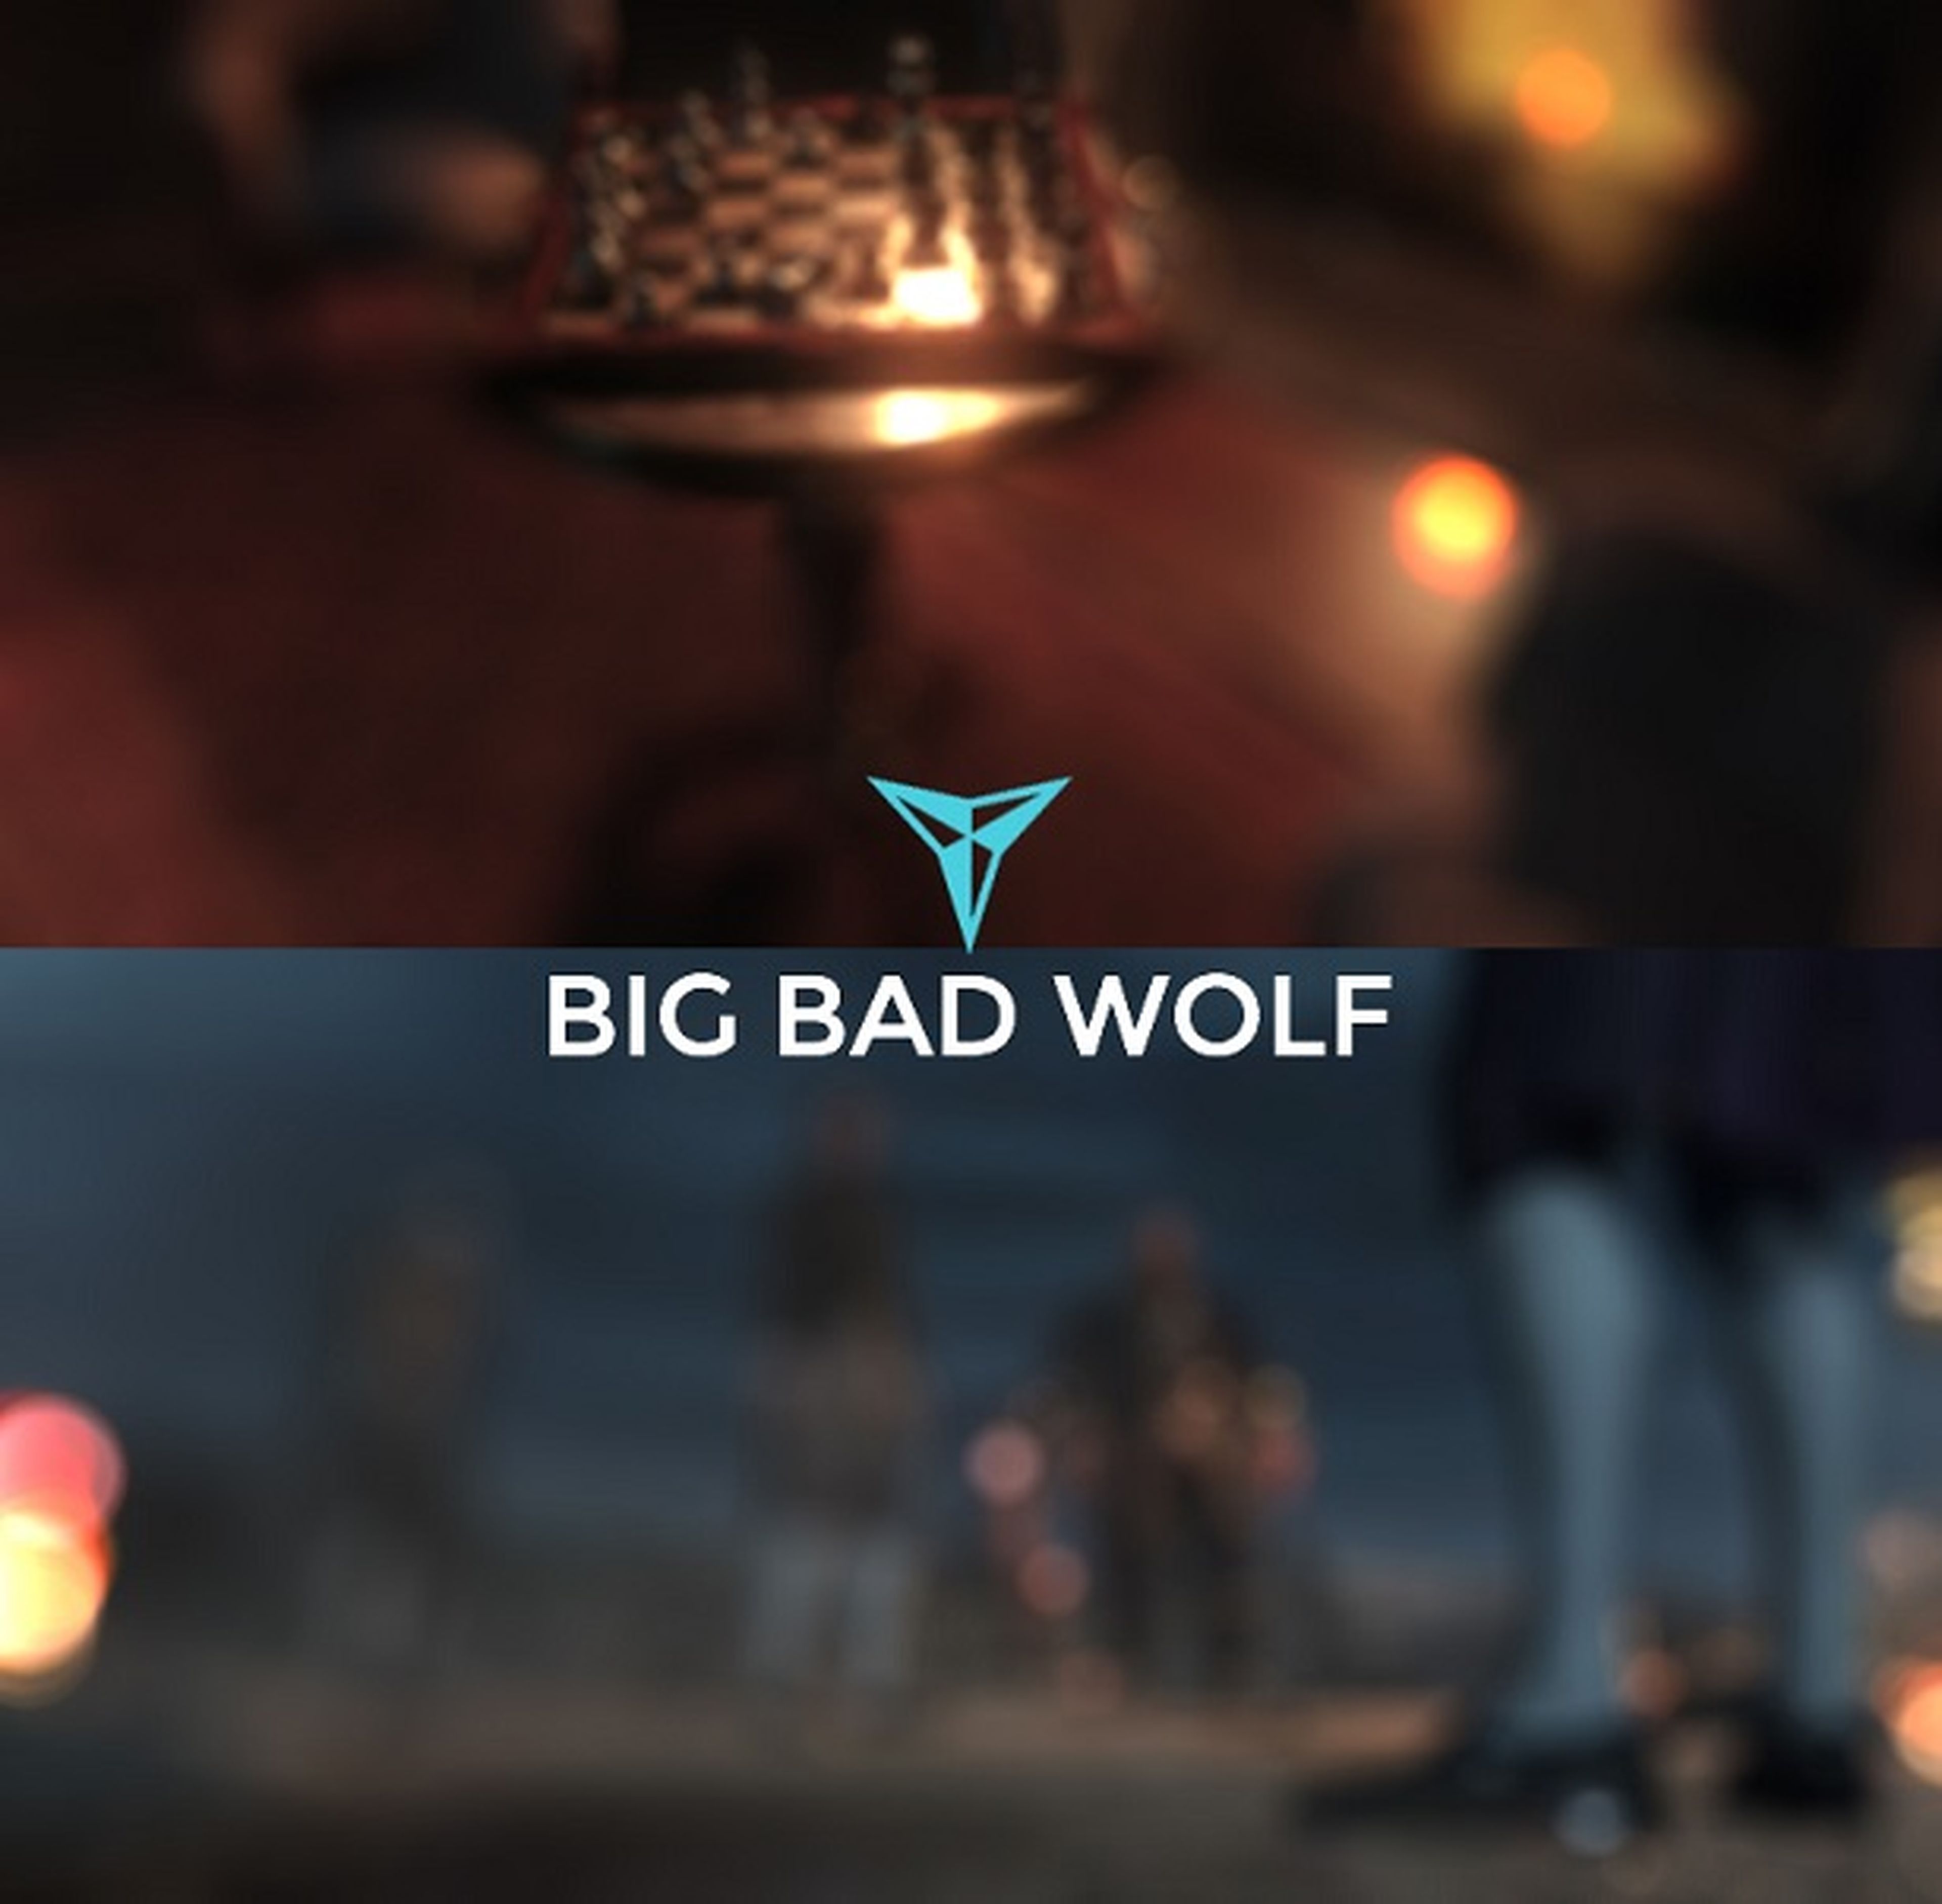 Big Bad Wolf, un estudio formado por veteranos, anuncia su nuevo RPG